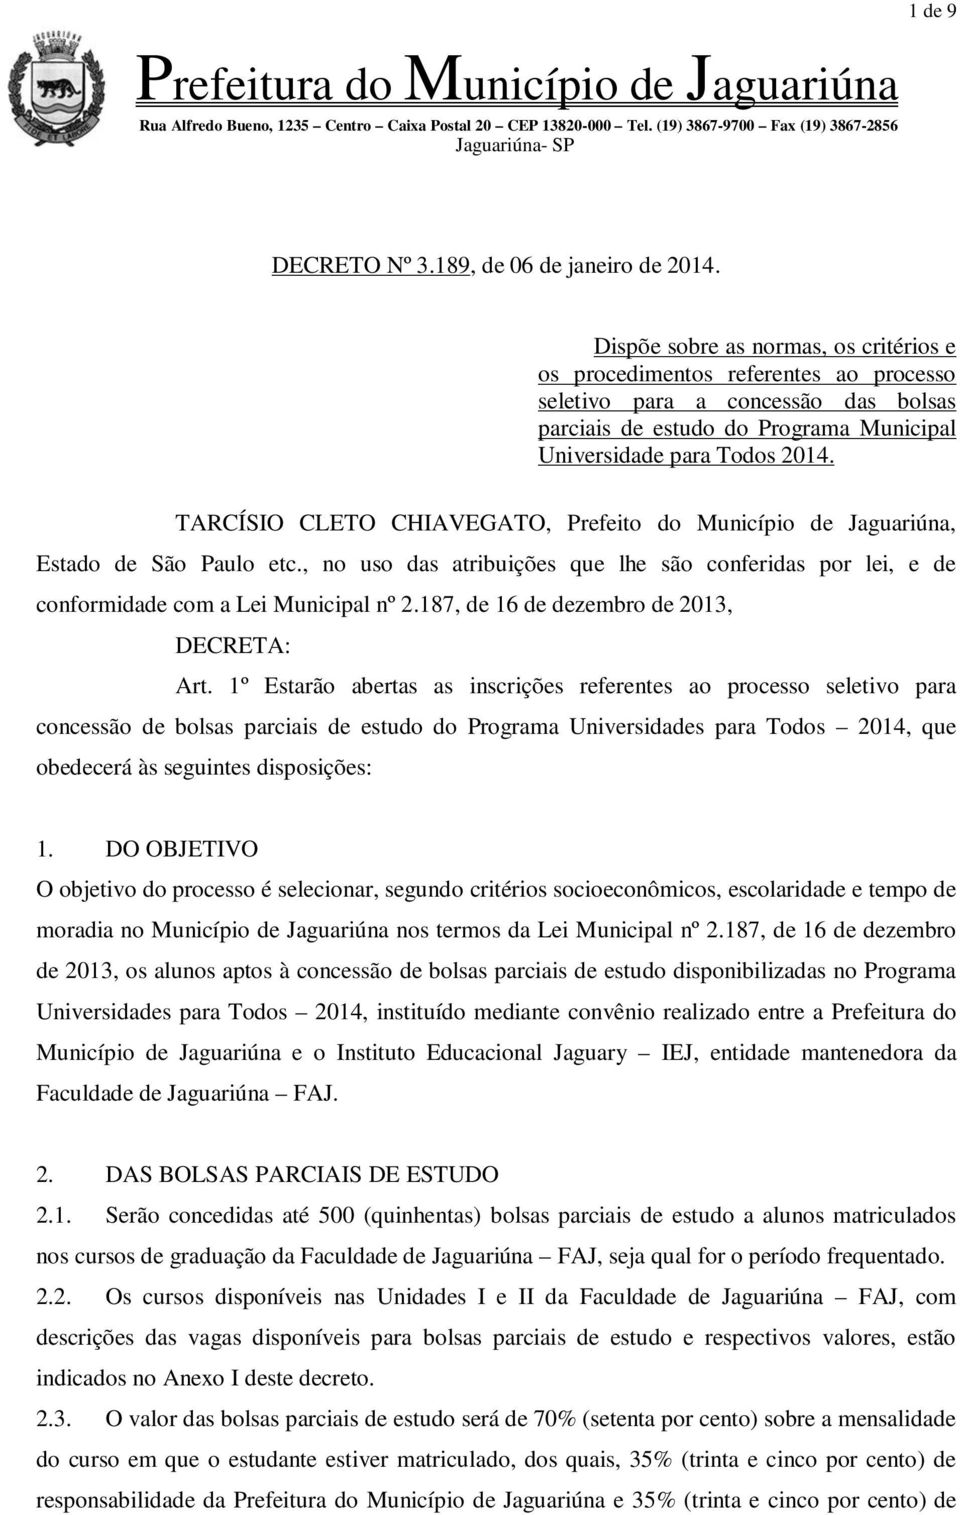 TARCÍSIO CLETO CHIAVEGATO, Prefeito do Município de Jaguariúna, Estado de São Paulo etc., no uso das atribuições que lhe são conferidas por lei, e de conformidade com a Lei Municipal nº 2.